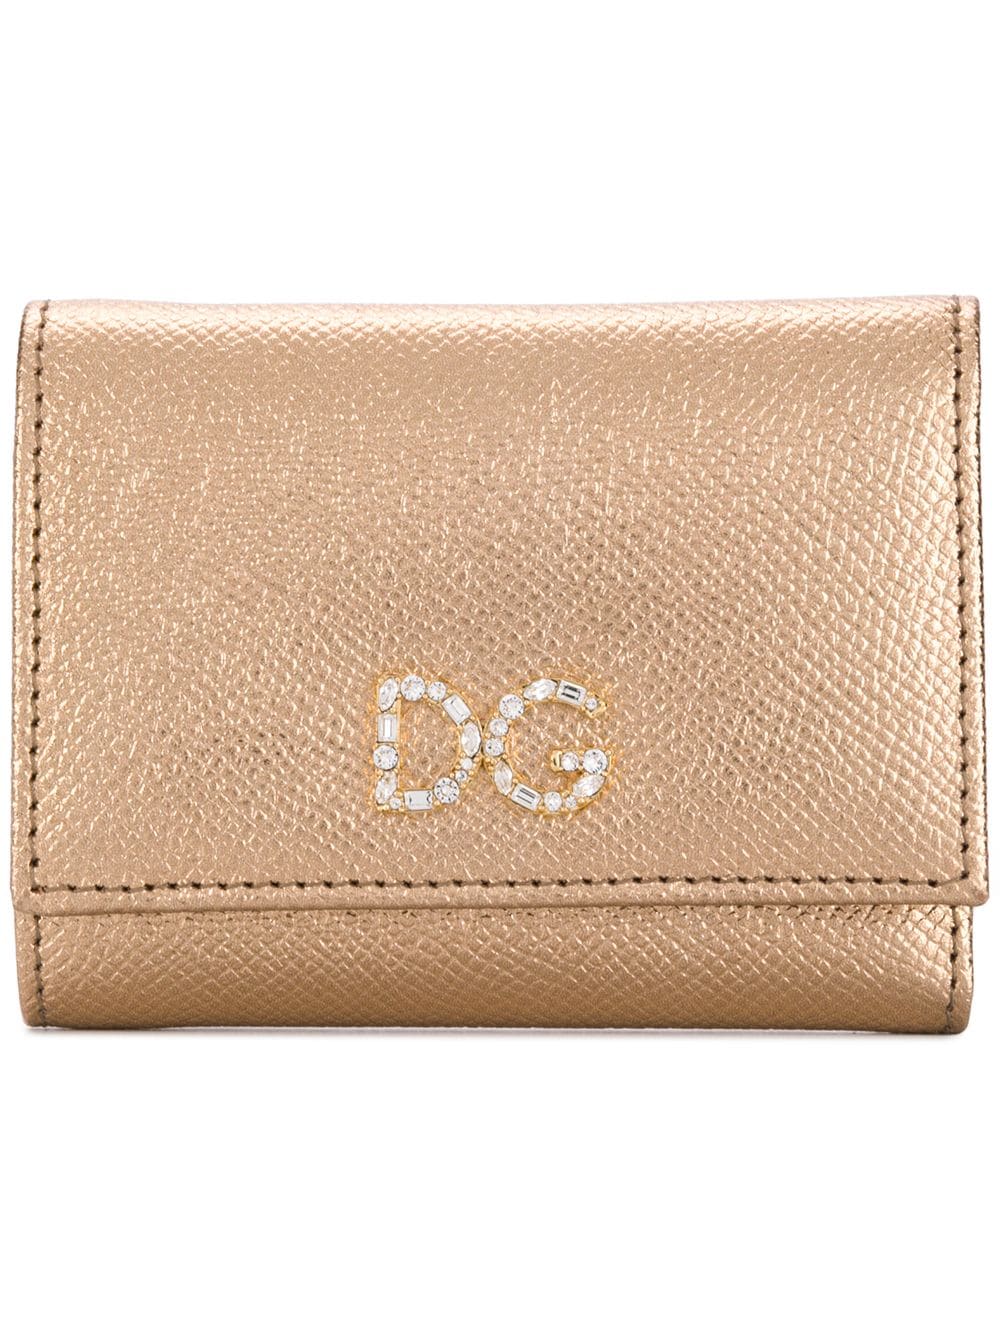 фото Dolce & Gabbana кошелек с декорированным логотипом DG